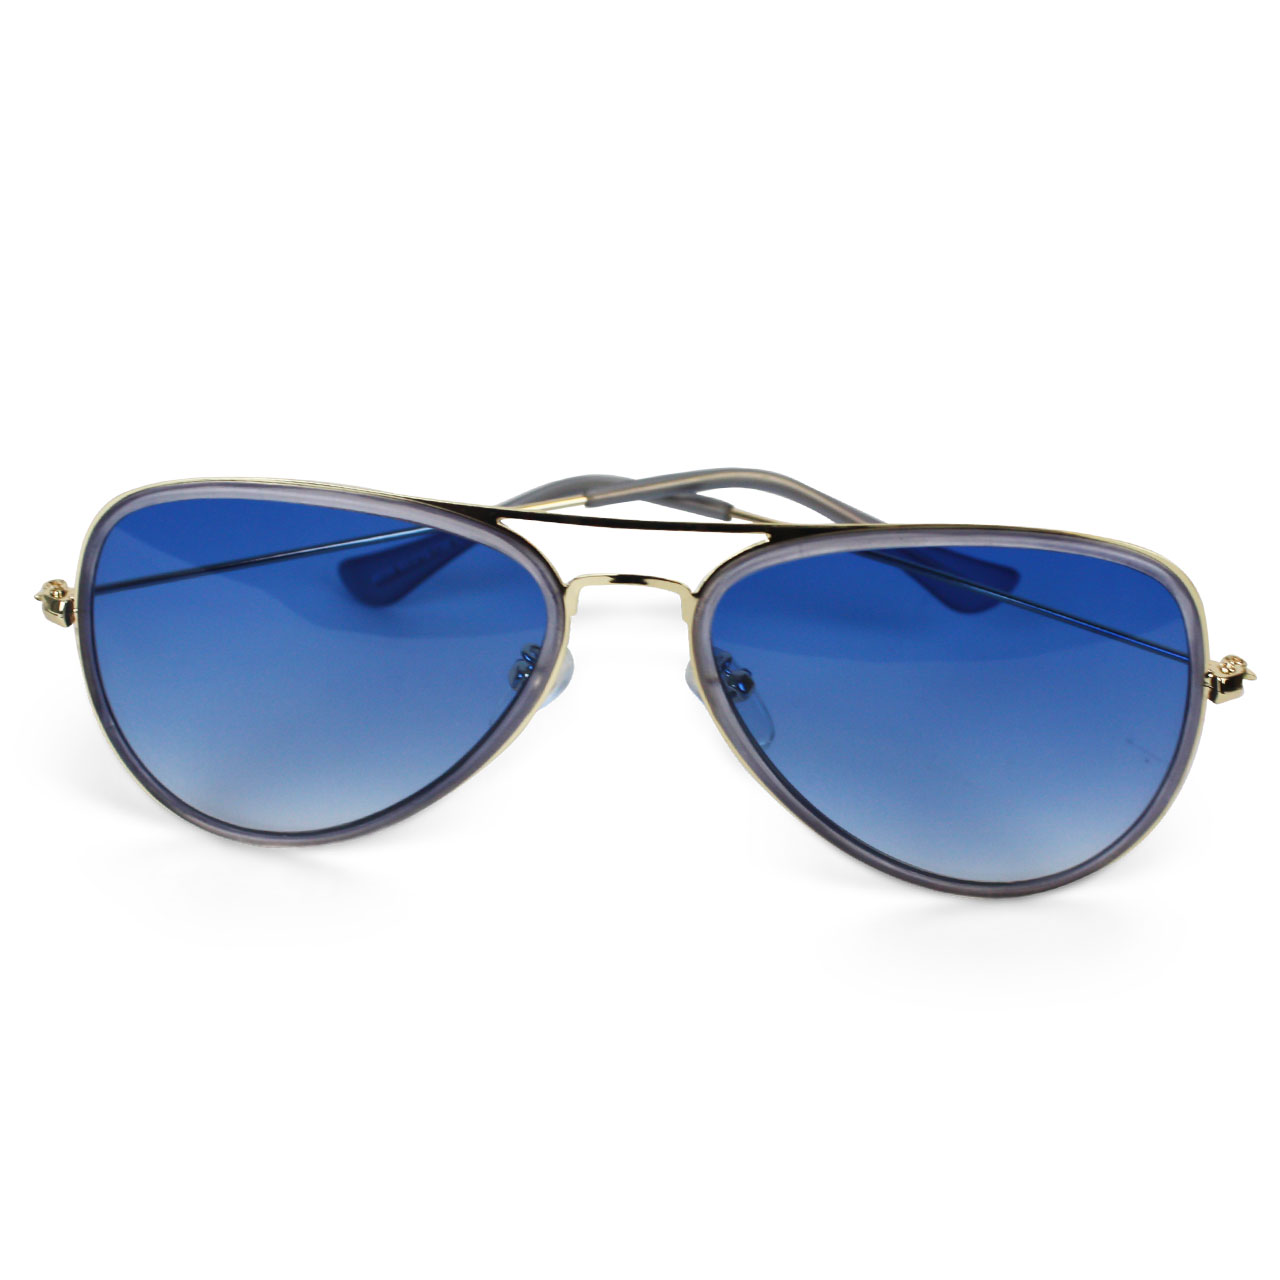 Unisex Polarized Day Aviator Sunglasses - Blue